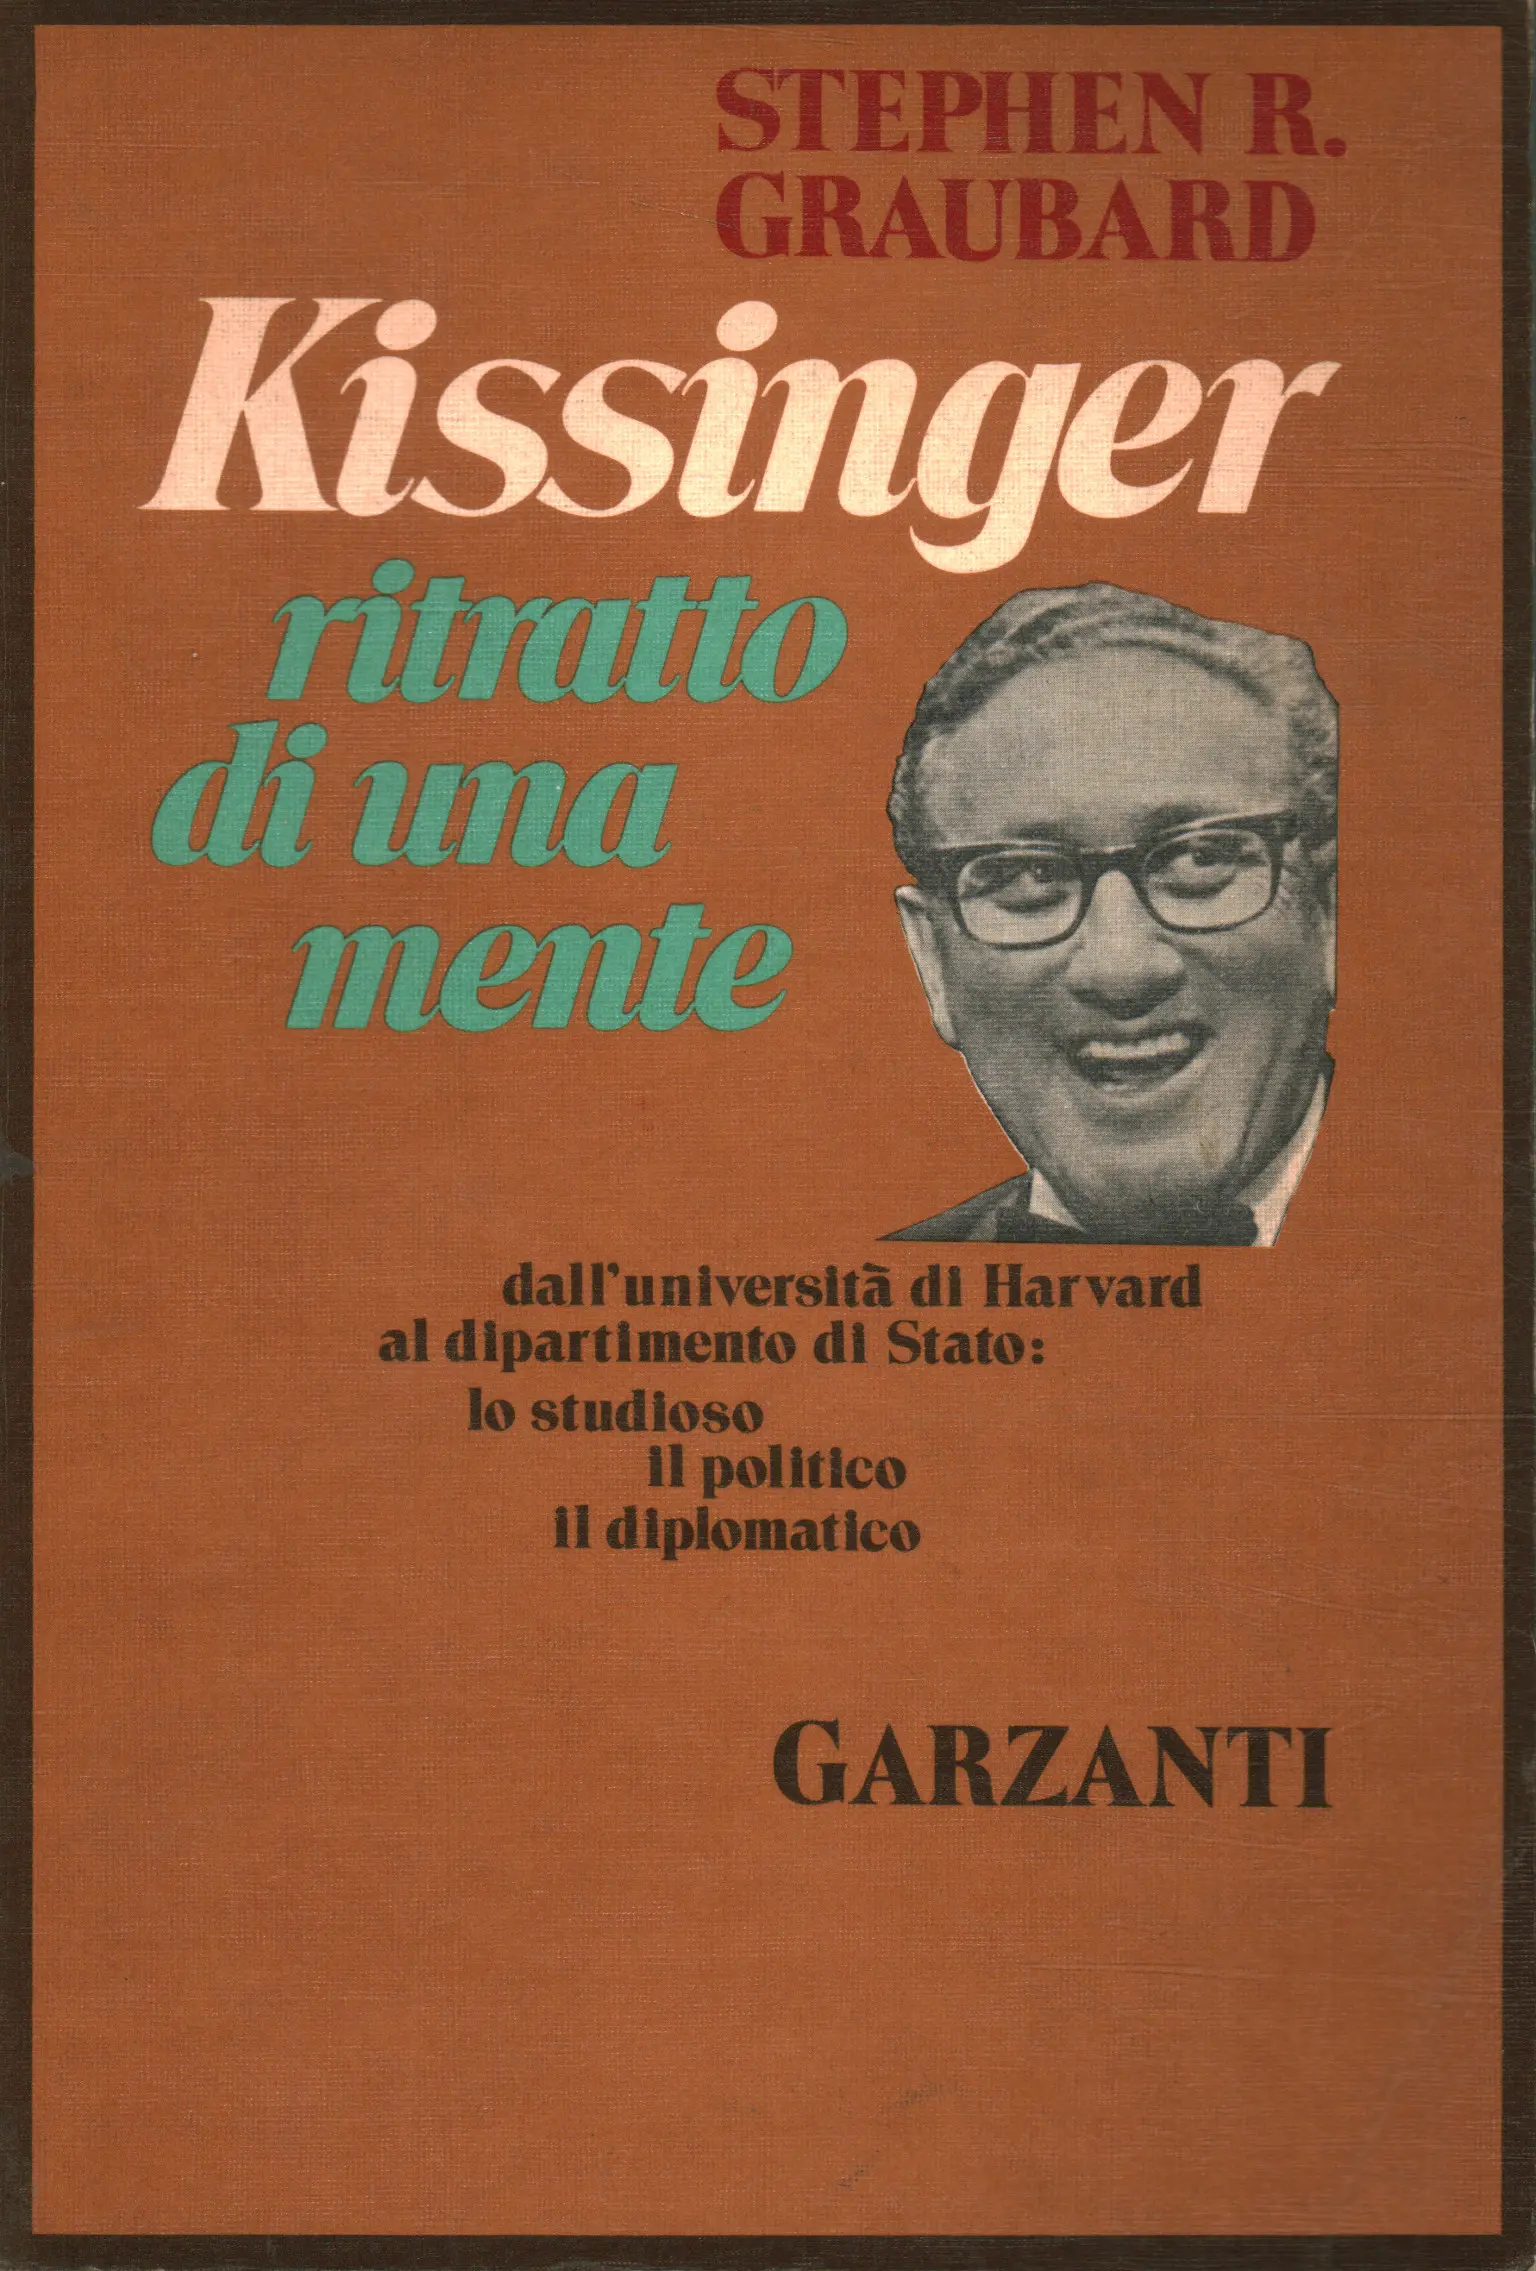 Stephen R Aldo Garzanti editore Kissinger: ritratto di una mente Graubard 